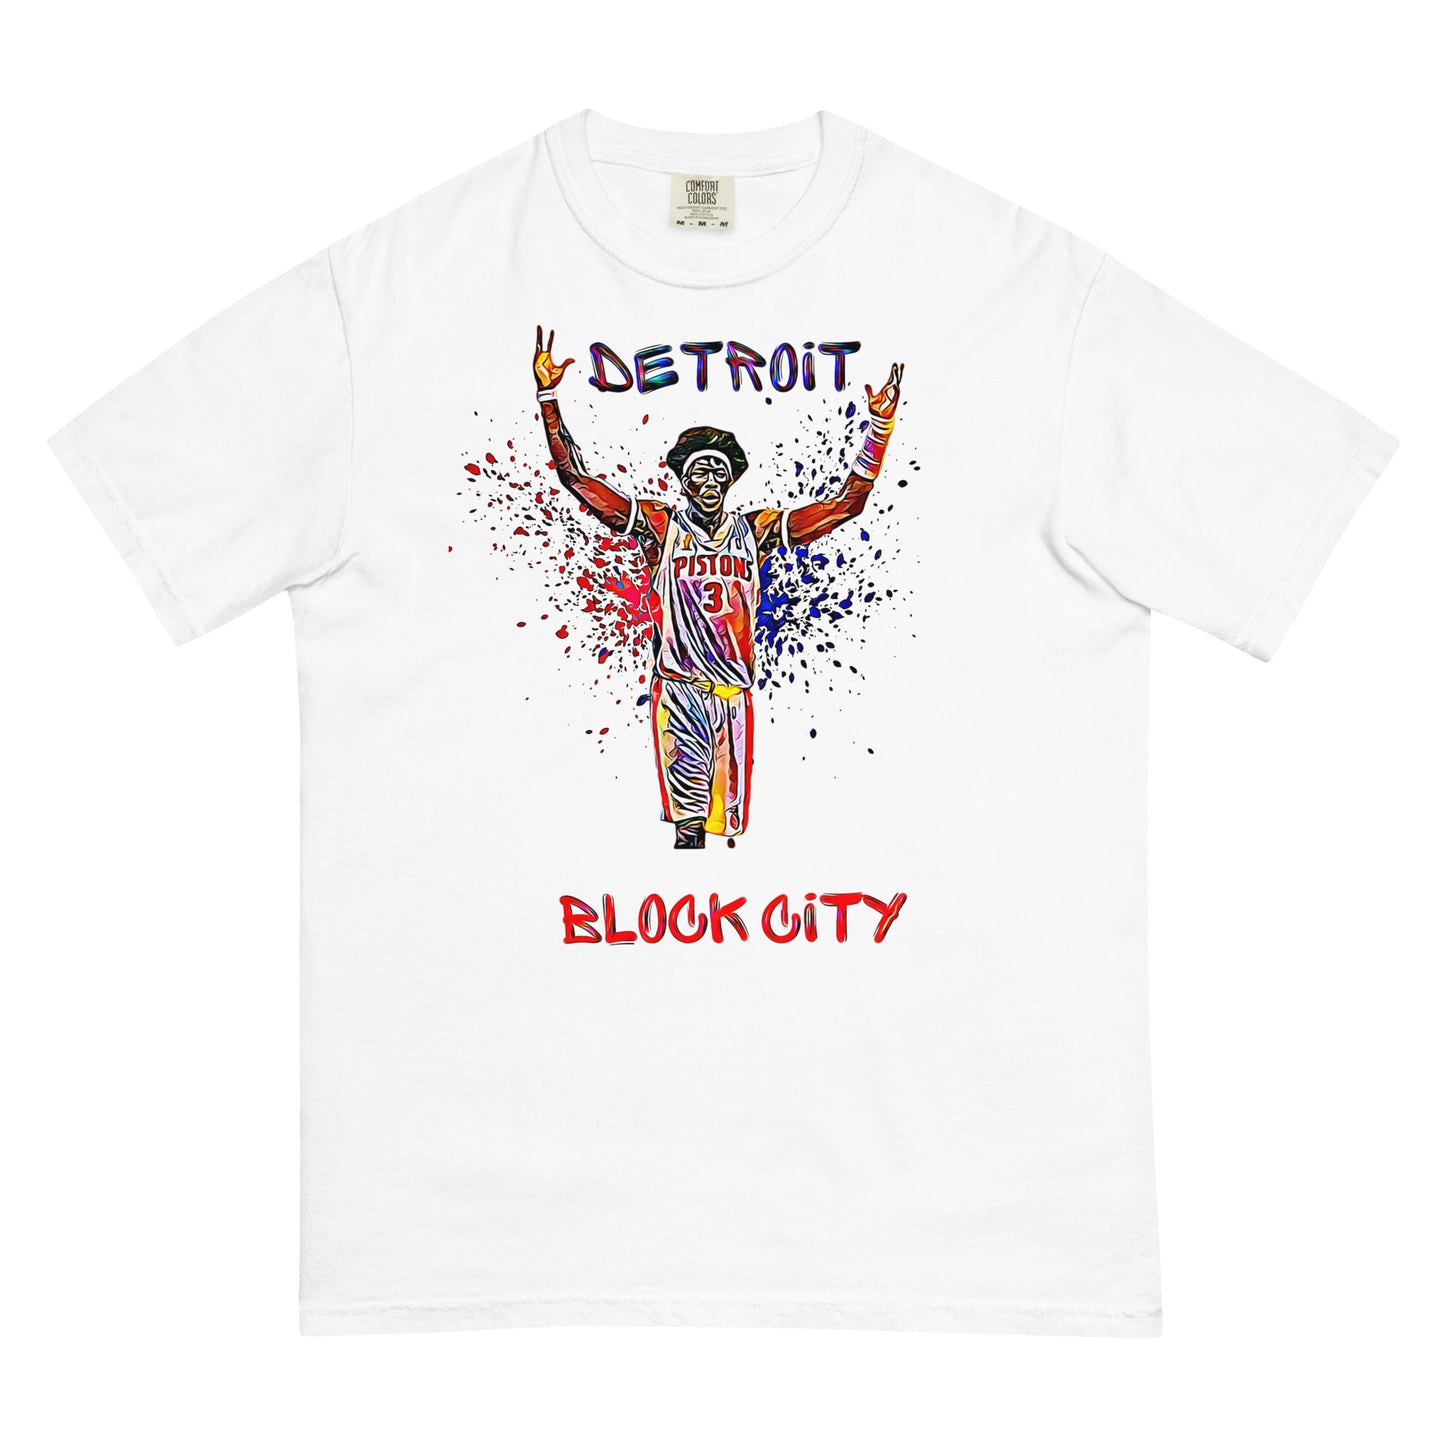 Ben Wallace Block City Men’s garment-dyed heavyweight t-shirt